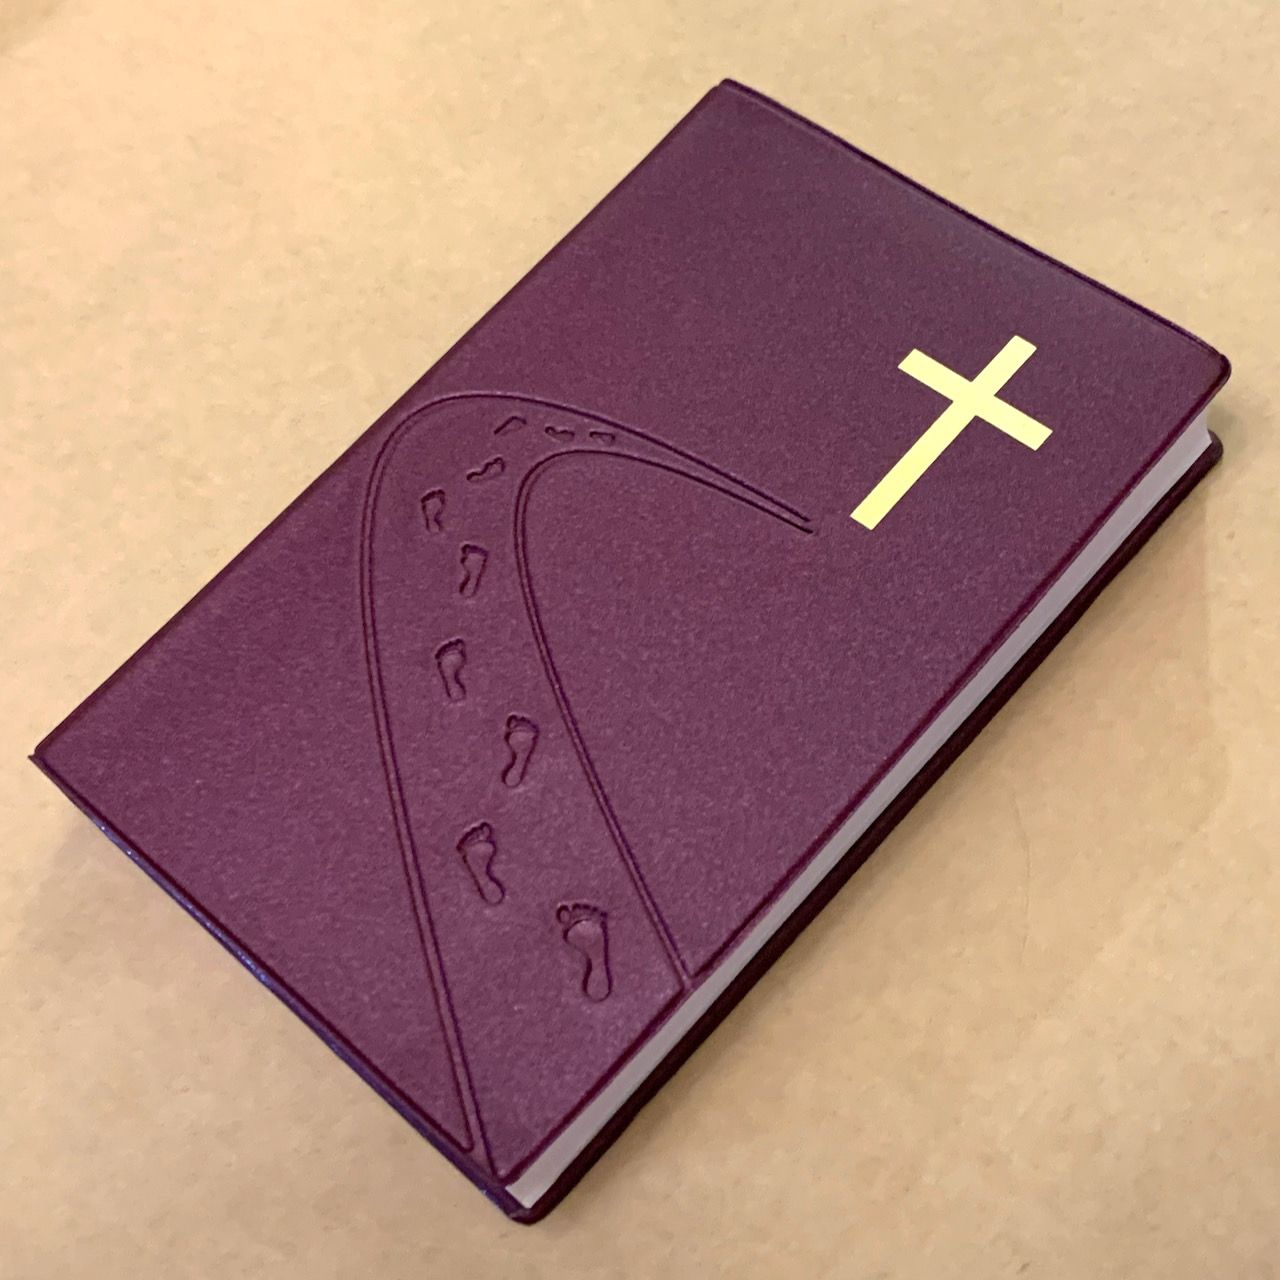 Библия 055 код C3 7115 переплет из искусственной кожи, цвет фиолетовый металлик, дизайн "дорога ко Кресту", надпись "Библия" с торца, средний формат, 140*213 мм, параллельные места по центру страницы, крупный шрифт